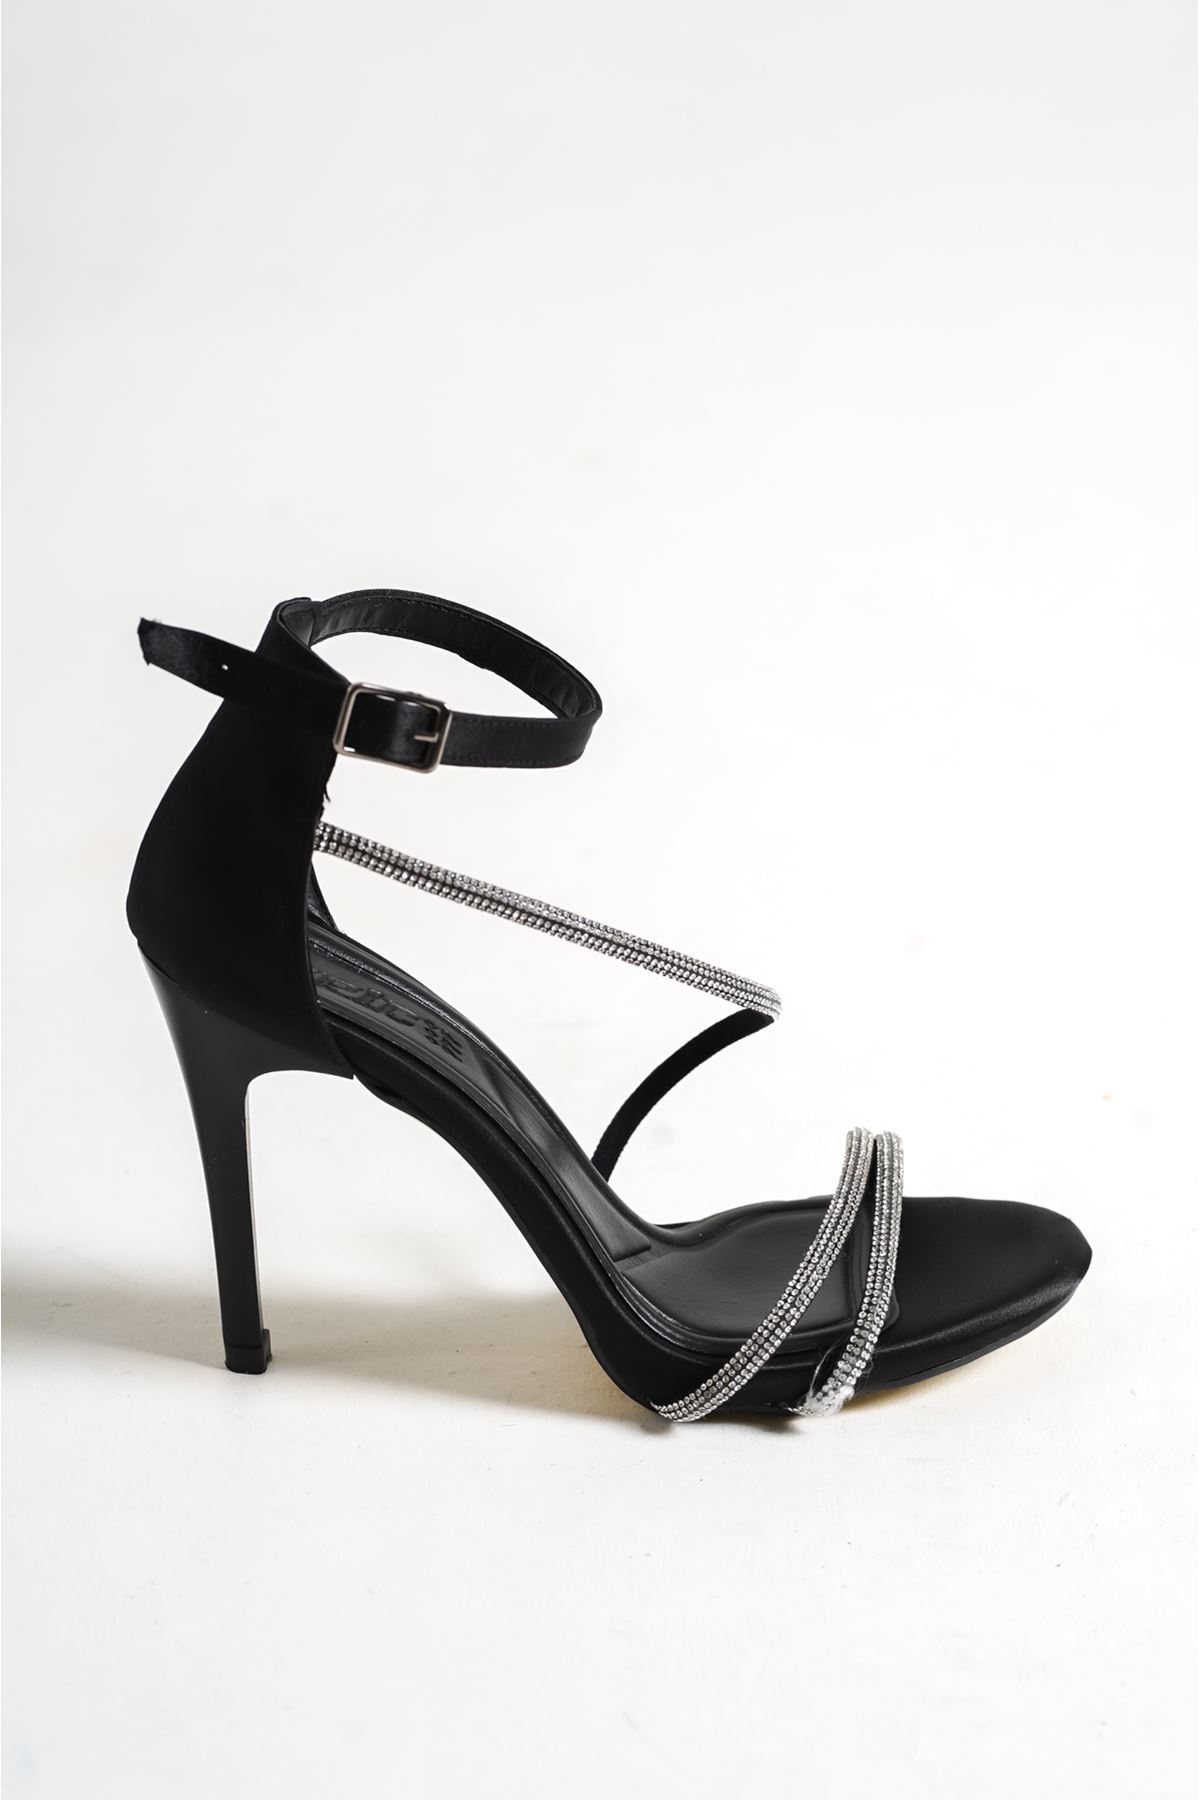 Aleron Siyah Saten Taşlı Yüksek Topuklu Kadın Ayakkabı